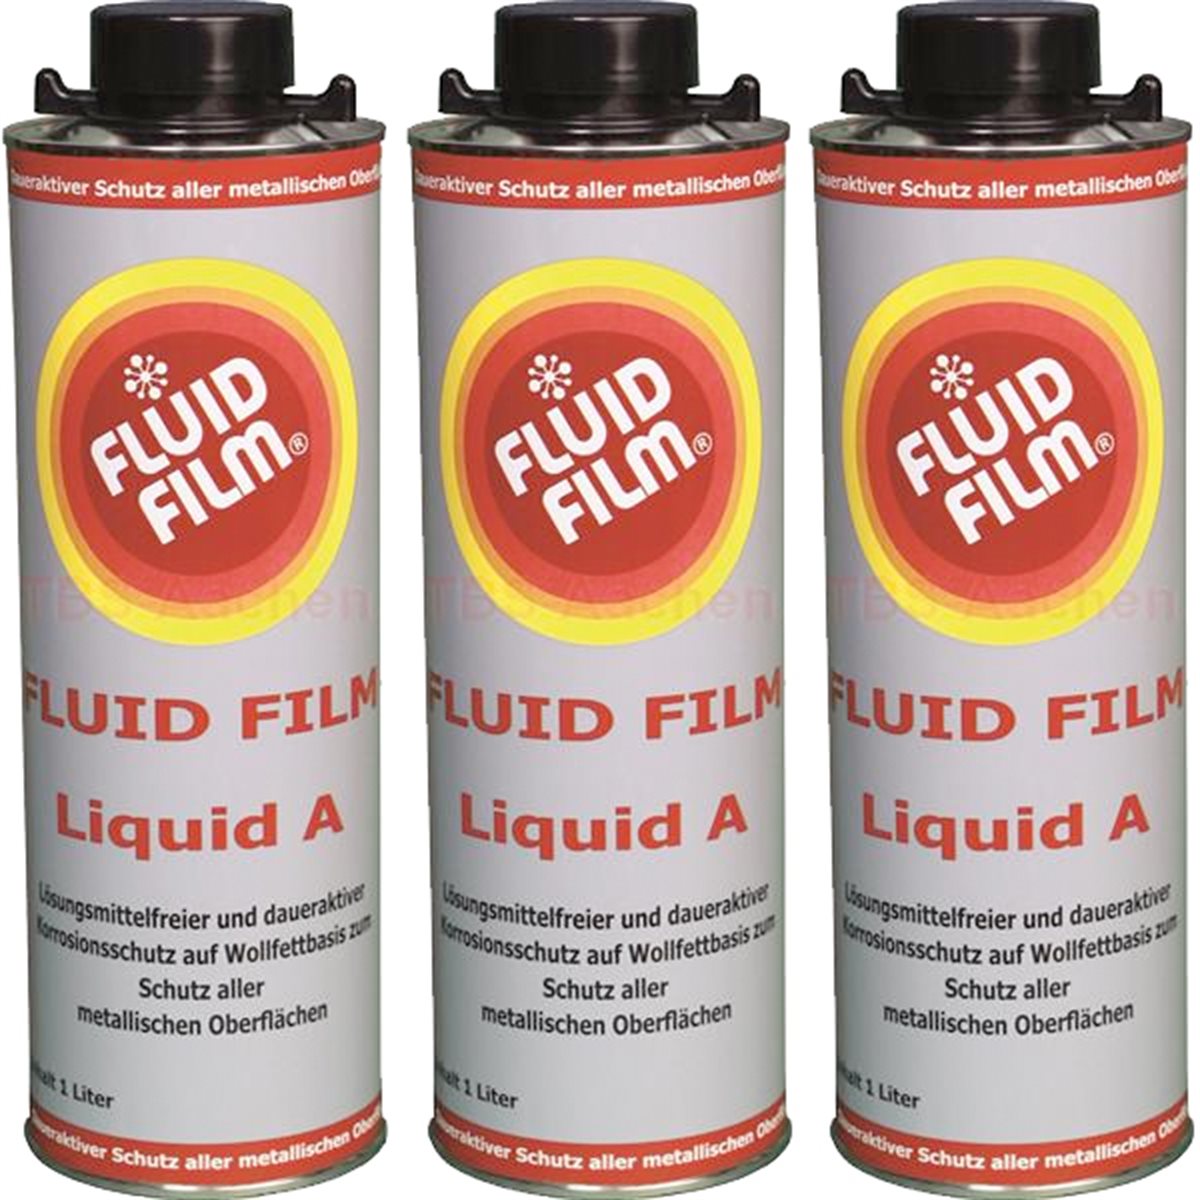 fluid film advance auto parts